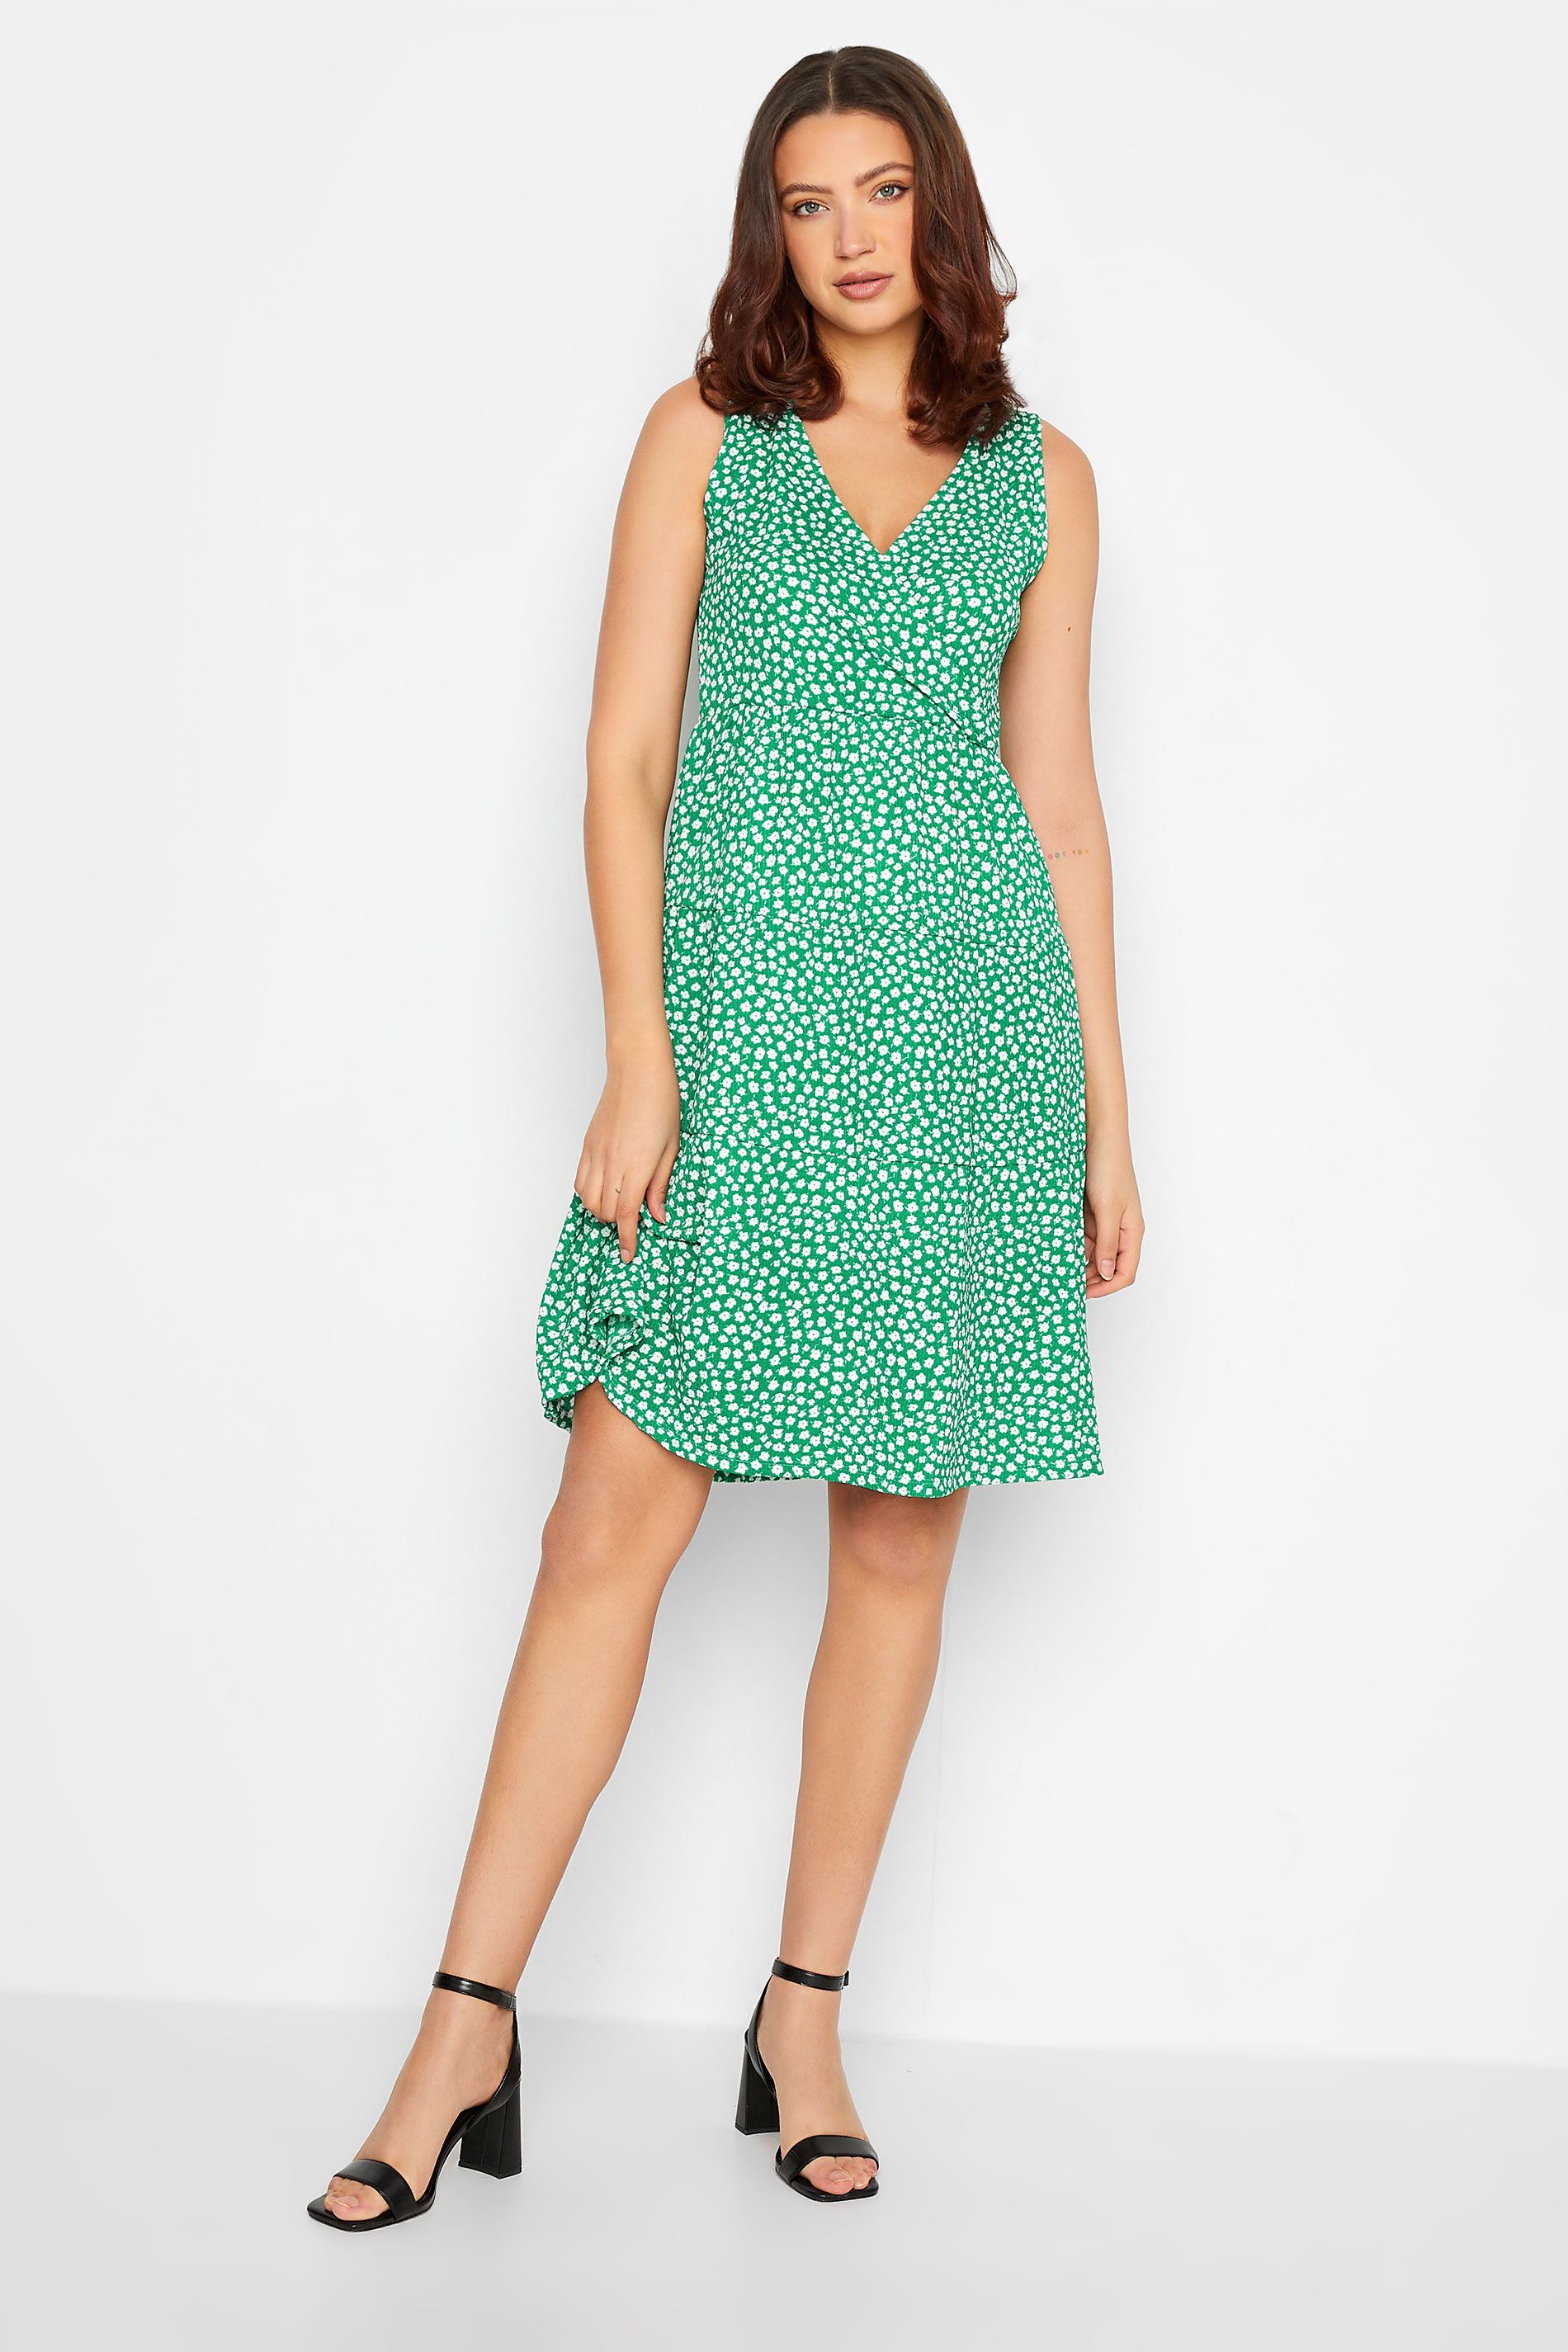 LTS Tall Green Ditsy Print Mini Dress | Long Tall Sally